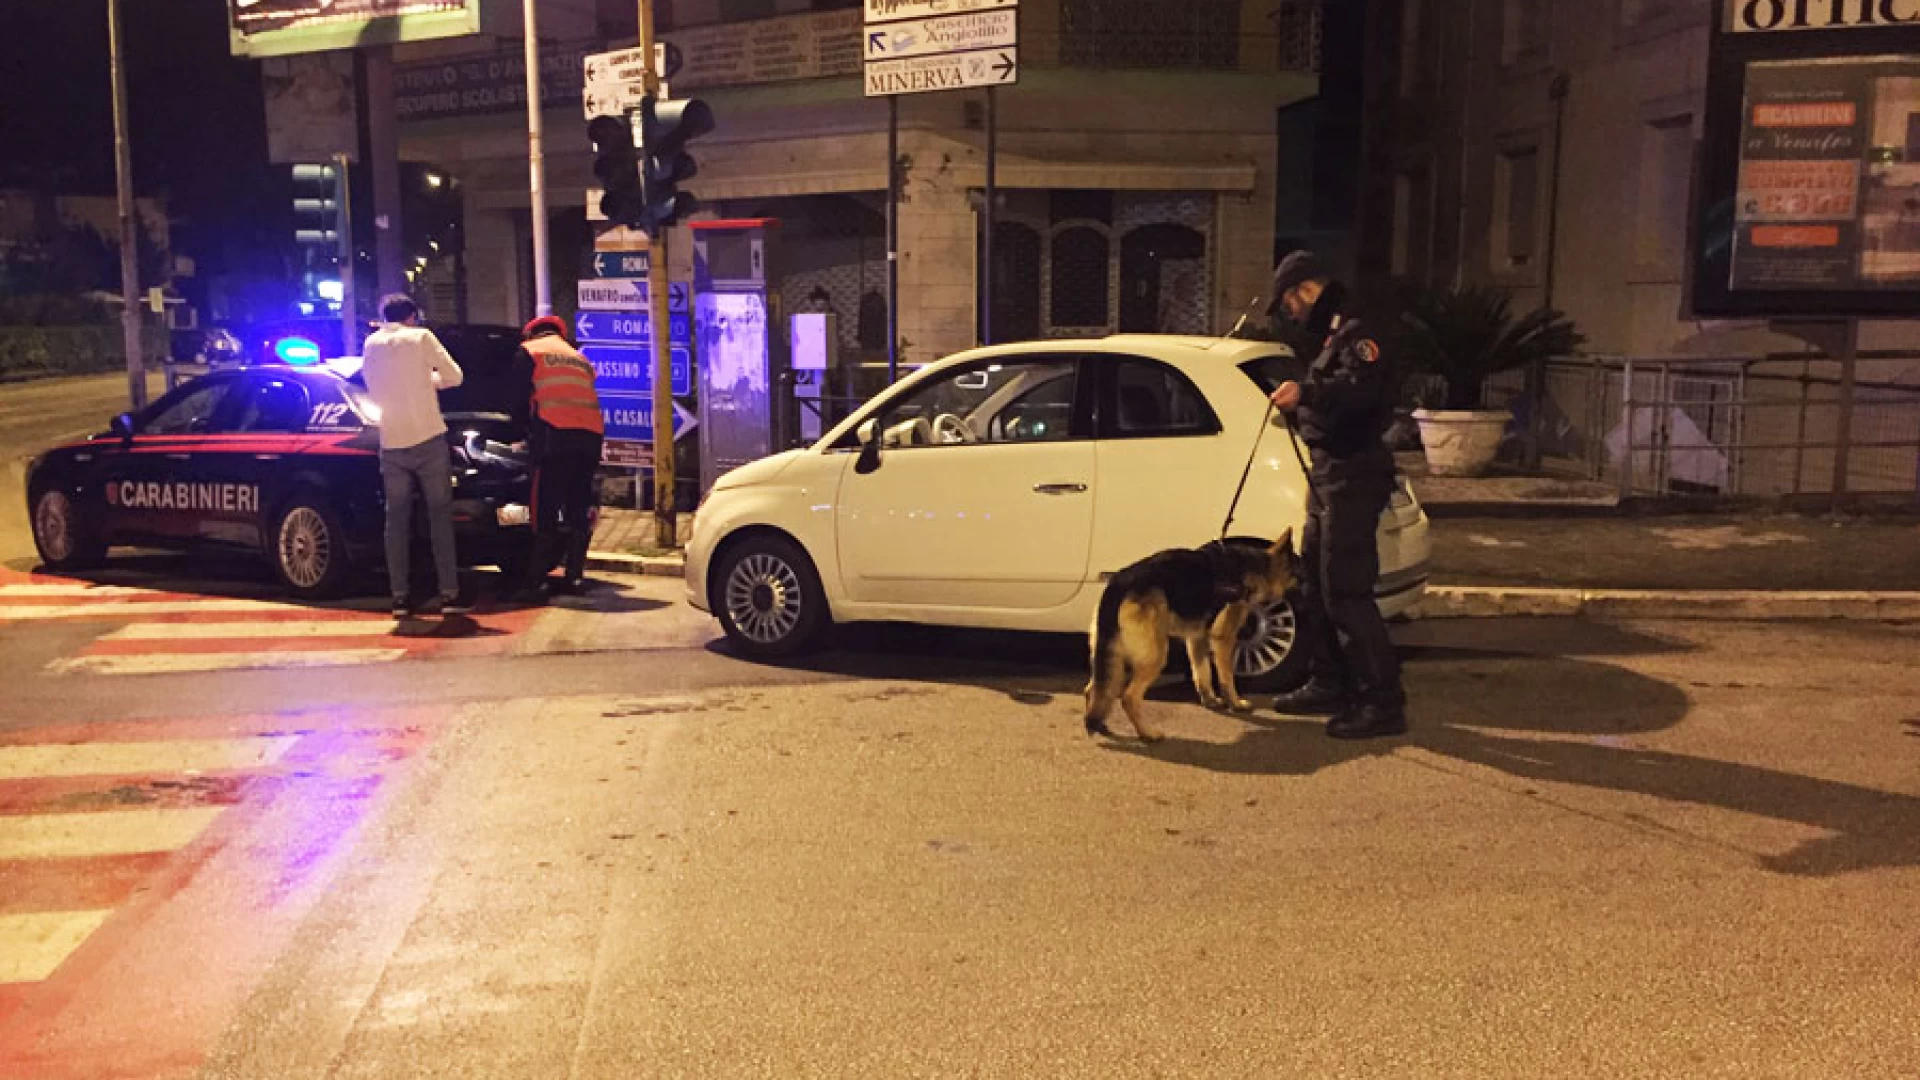 Isernia: Spaccio di stupefacenti, furto ed altri reati, controlli a tappeto dei Carabinieri nel week-end.